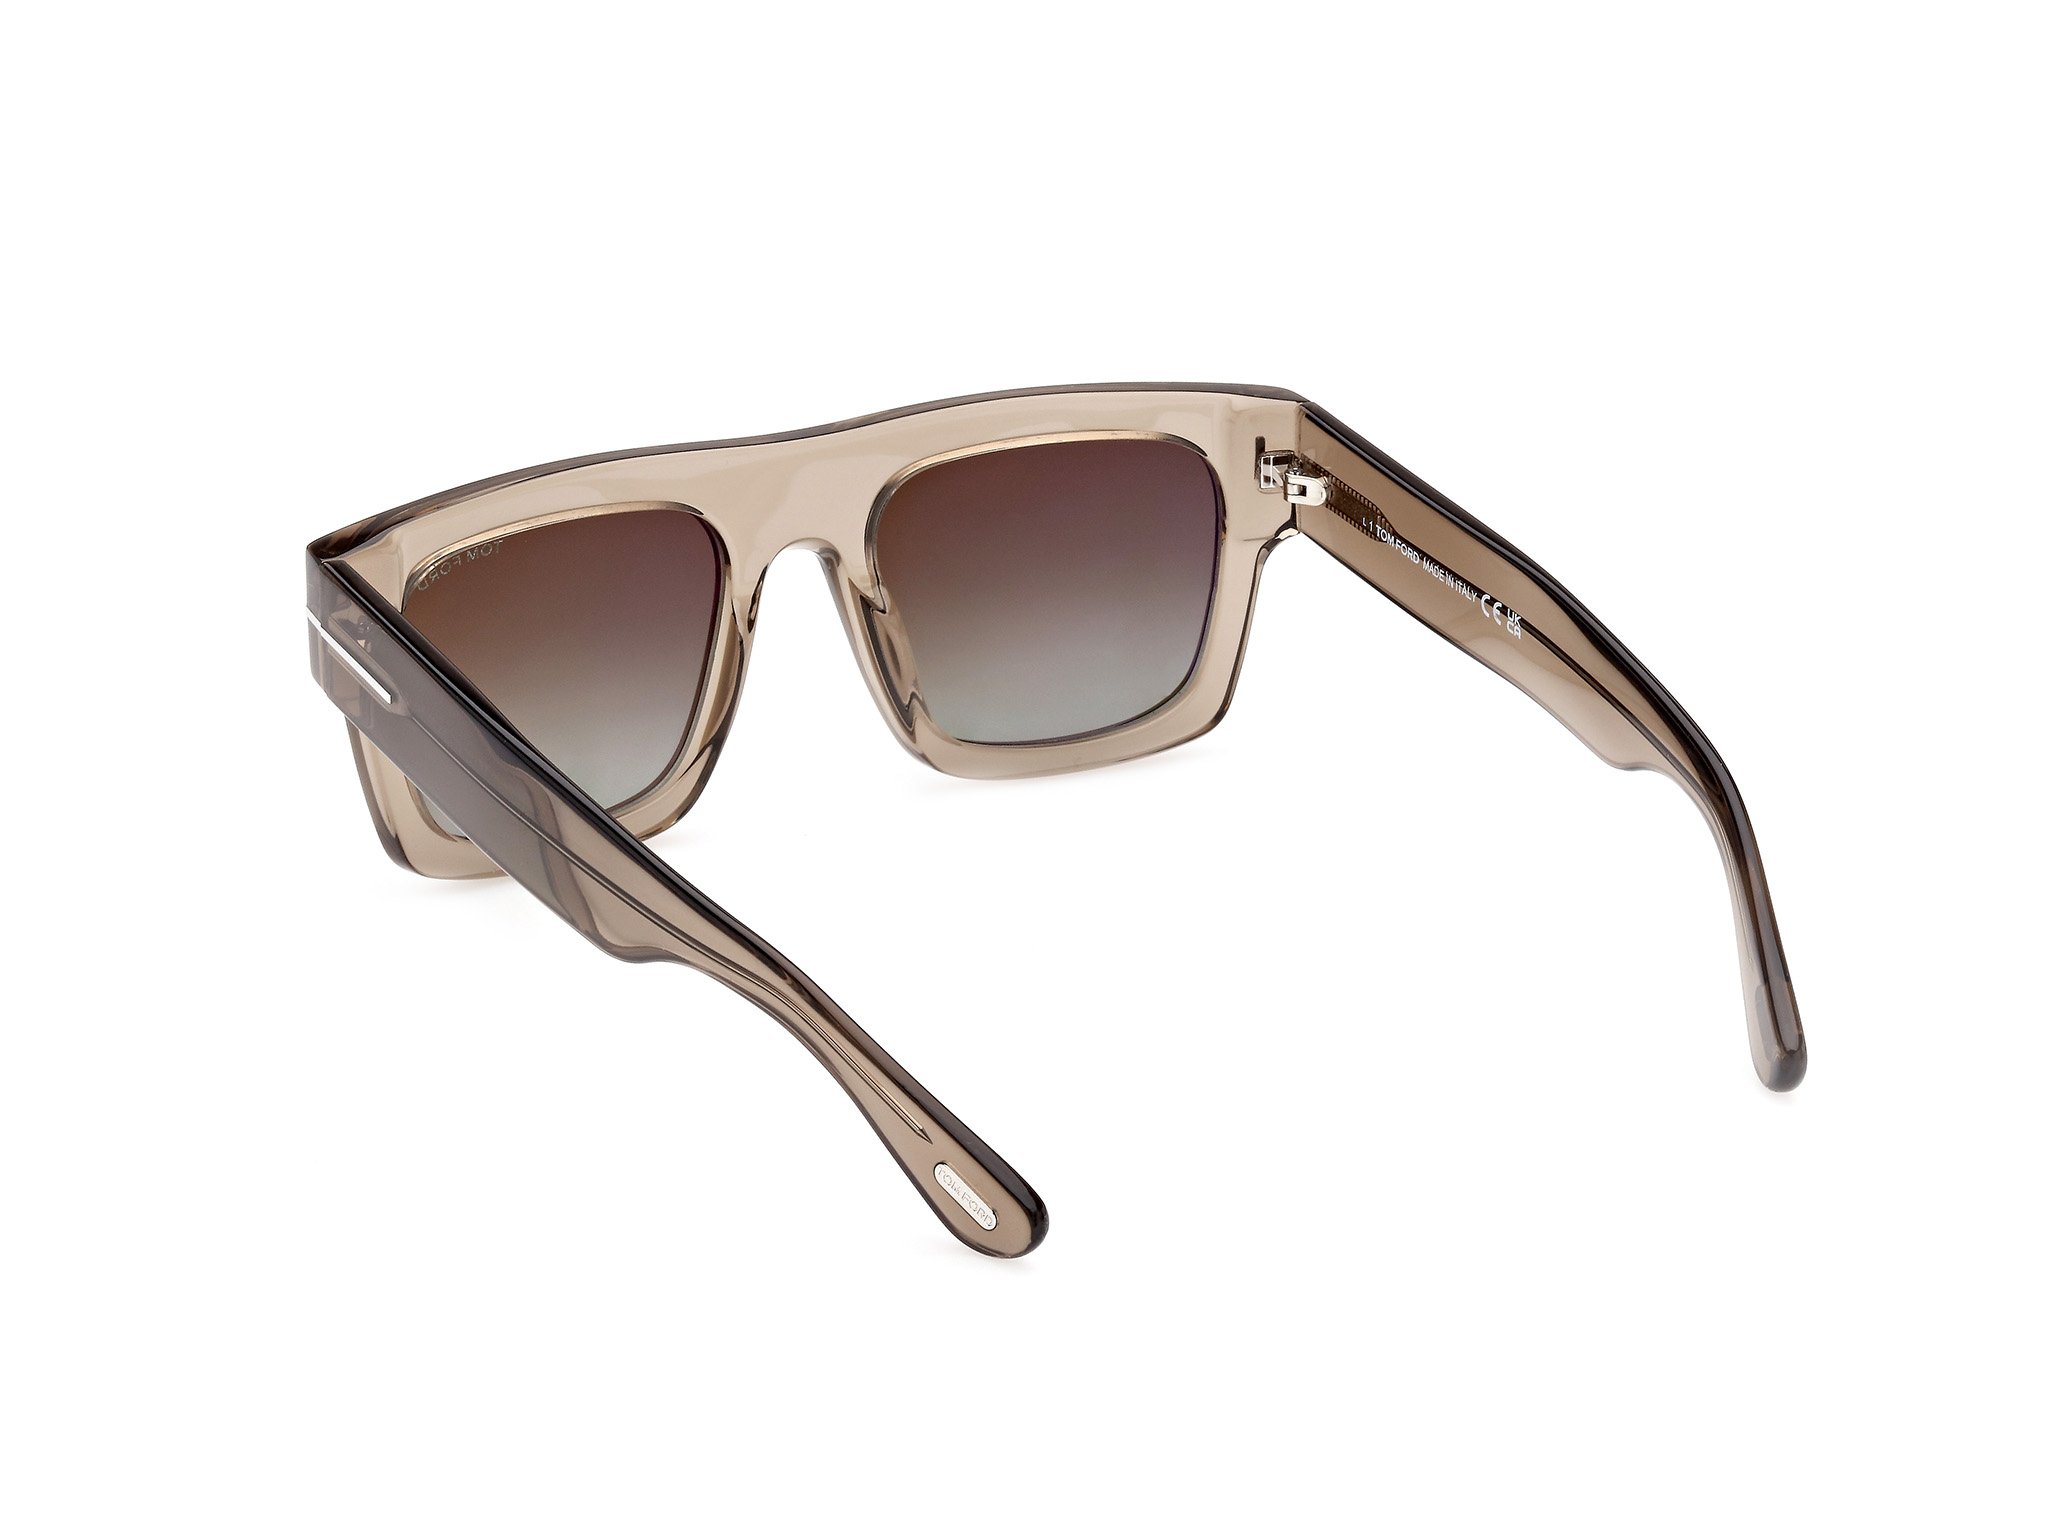 Das Bild zeigt die Sonnenbrille FT0711 47Q von der Marke Tom Ford in braun.